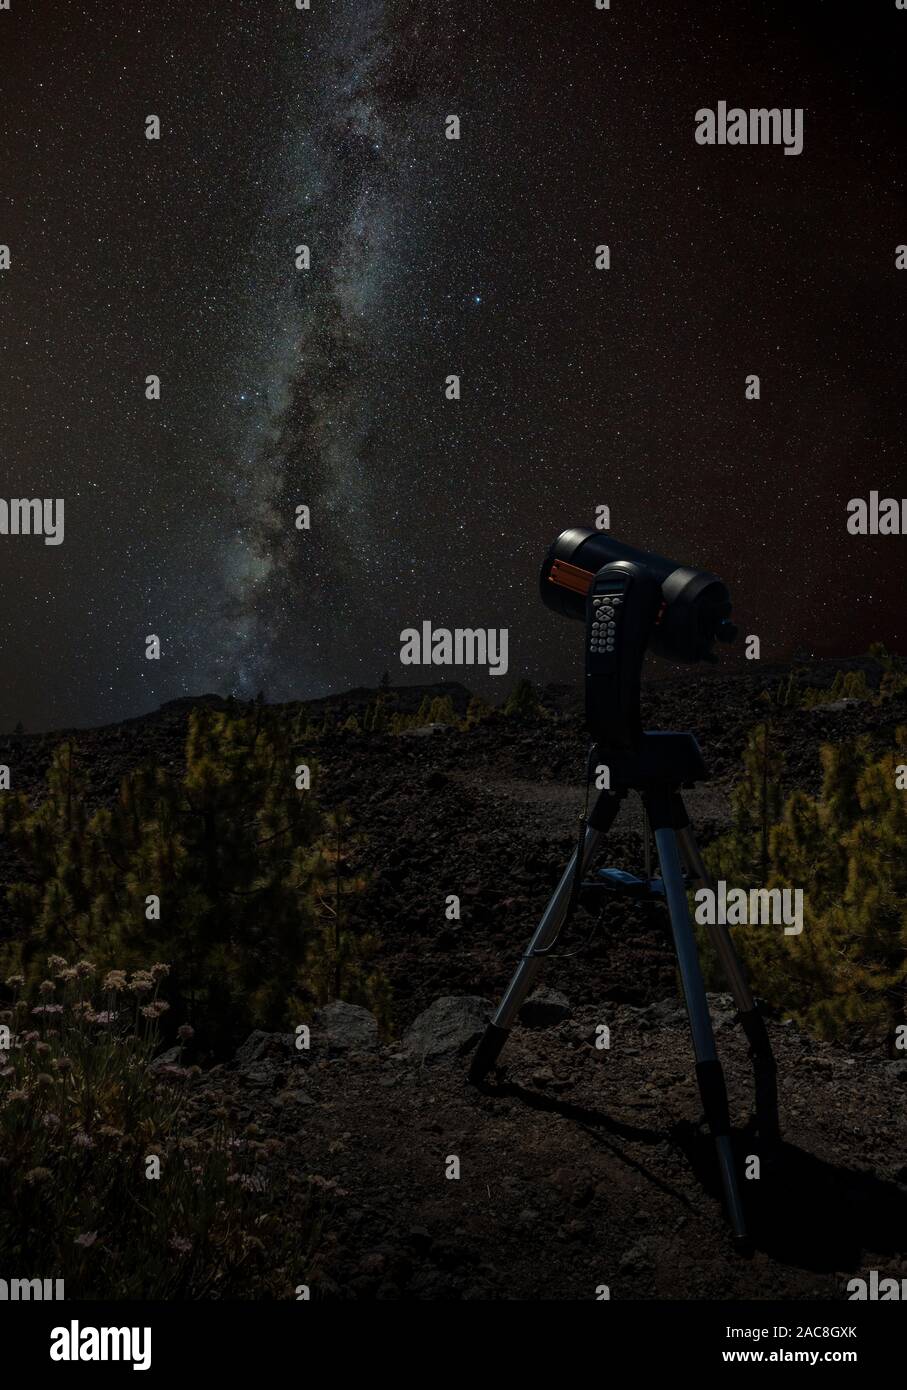 Junger Mann beobachtet Sternenhimmel durch ein Teleskop. In den Bergen,  umgeben von Pinienwald im Hintergrund Nacht Landschaft mit bunten  Milchstraße Stockfotografie - Alamy